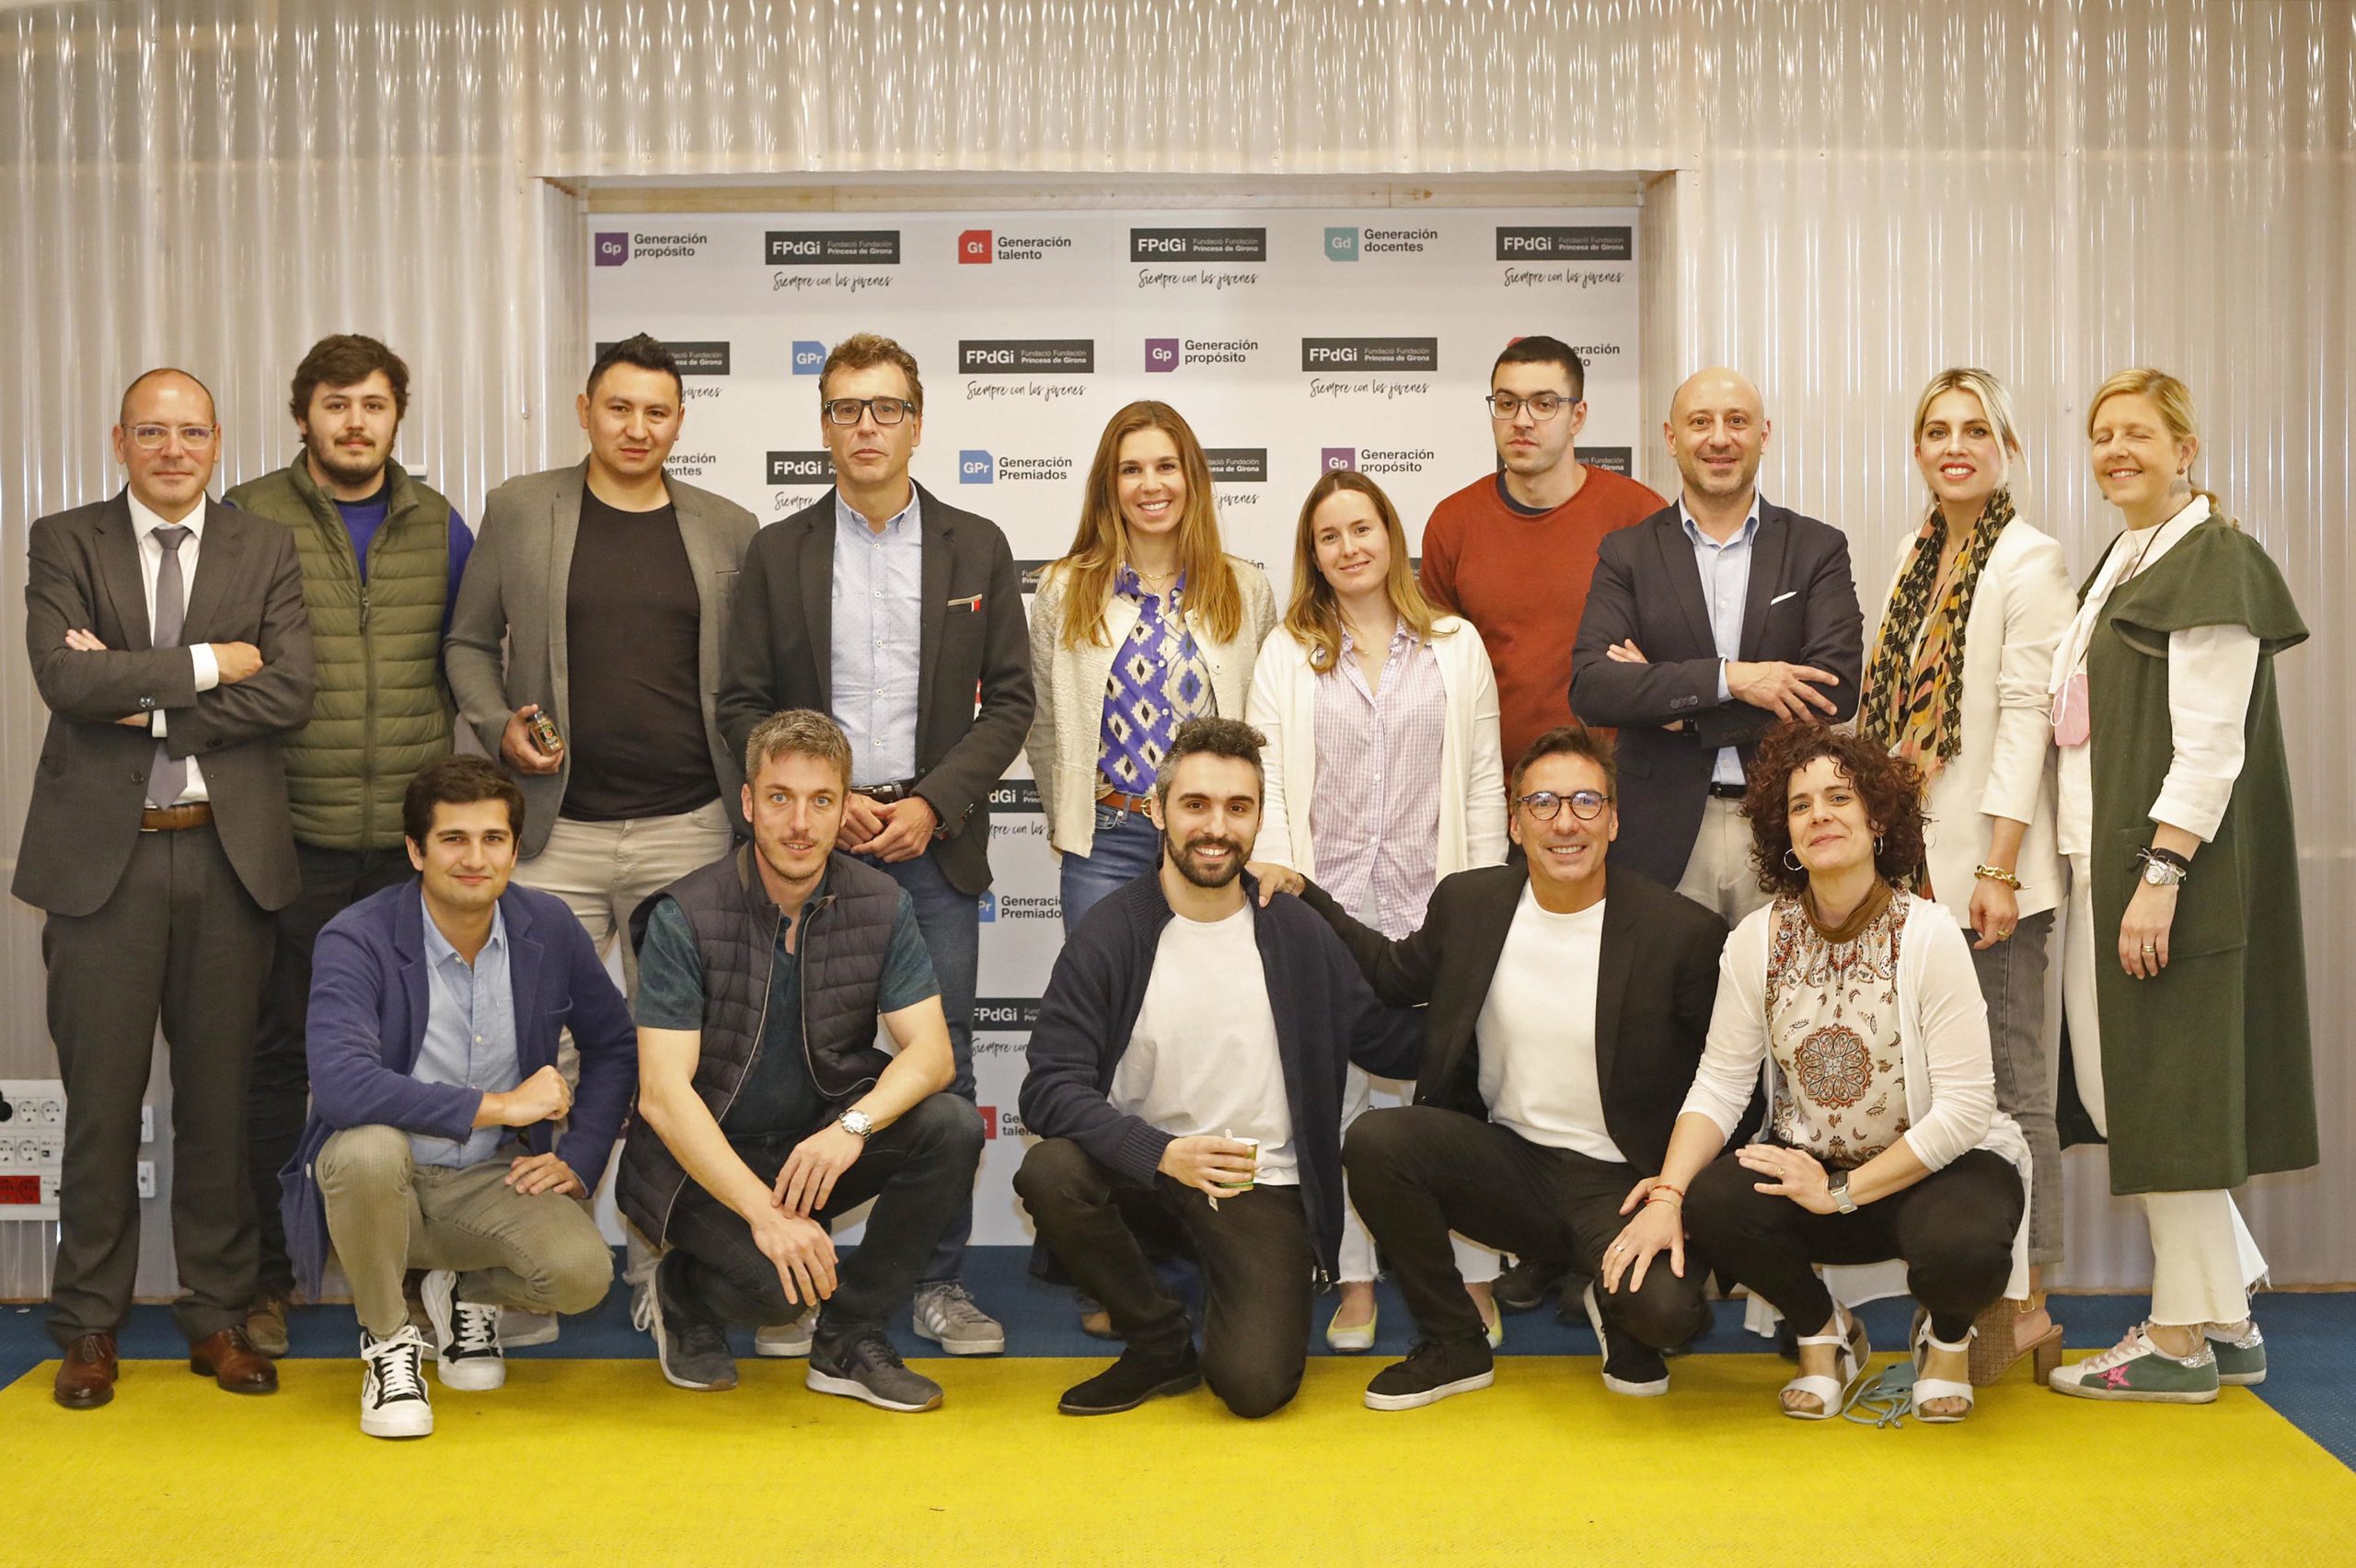 Empieza el Tour del Talento en Girona con un reto: convertir la ciudad en un hub de talento internacional